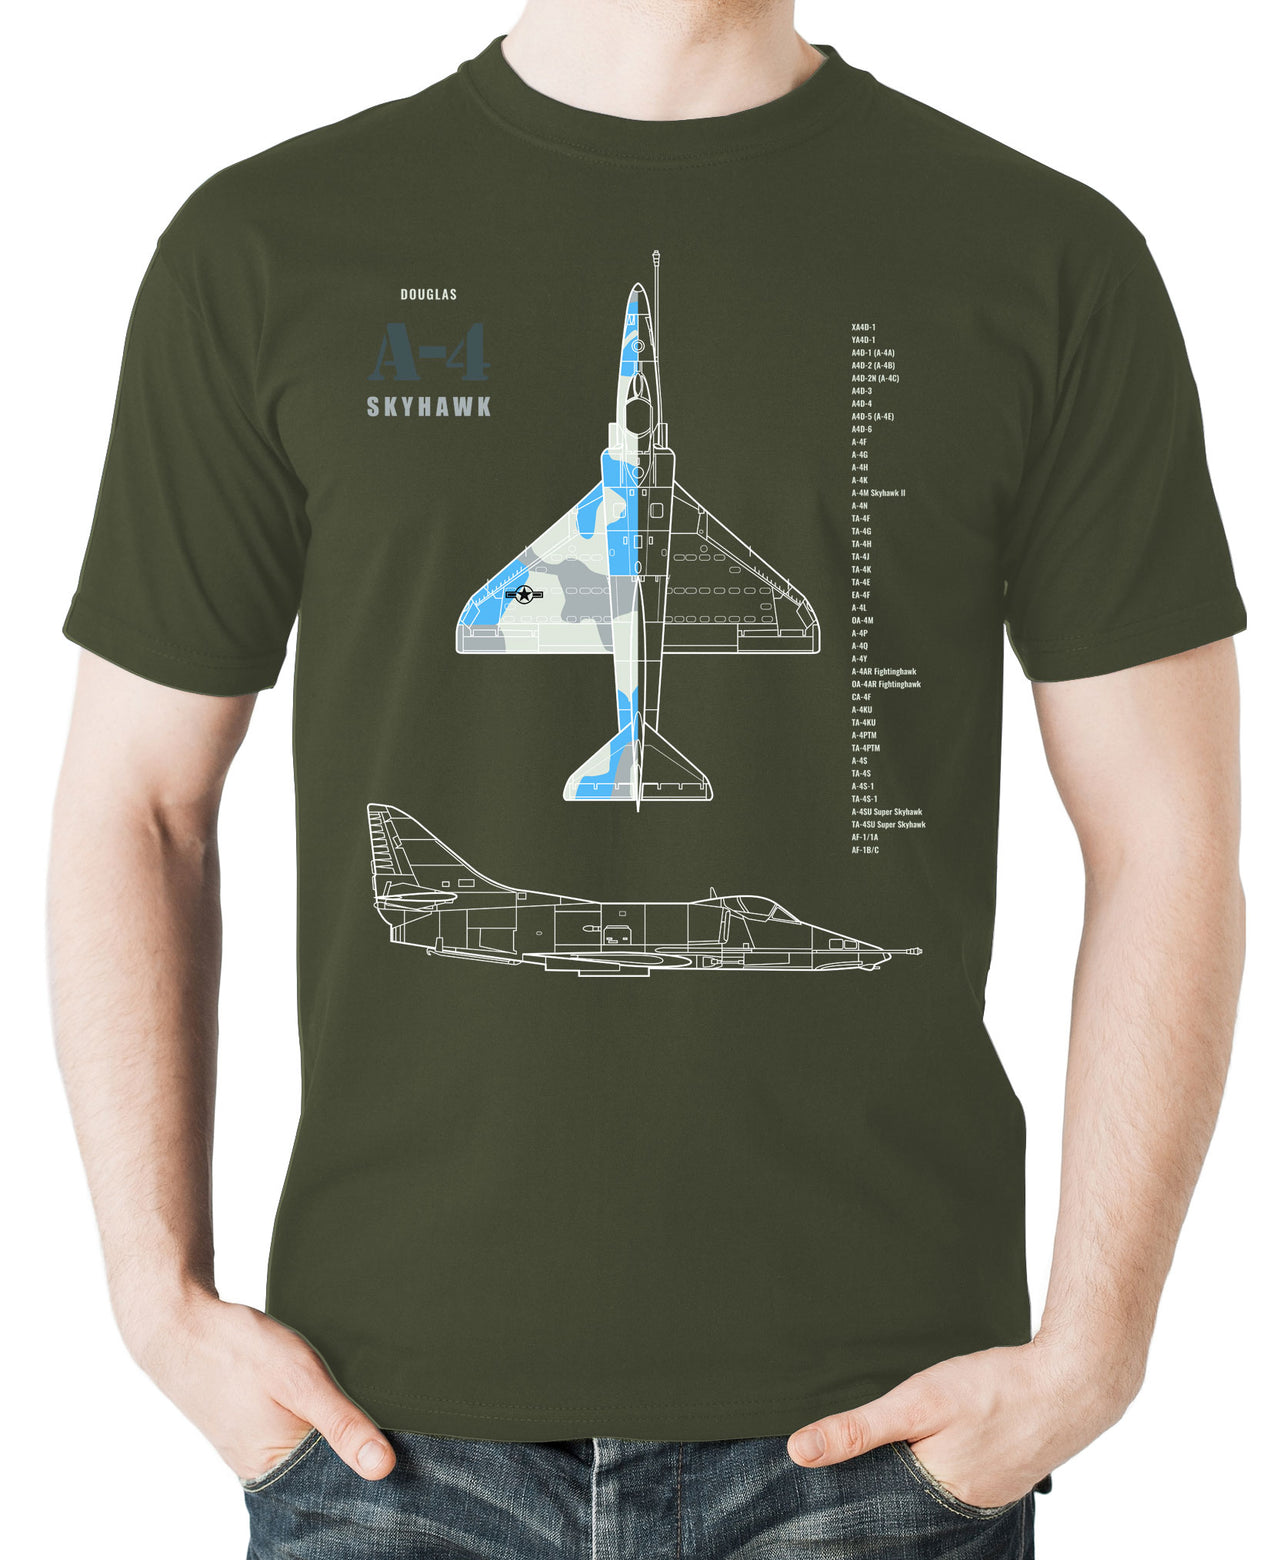 A-4 Skyhawk - T-shirt